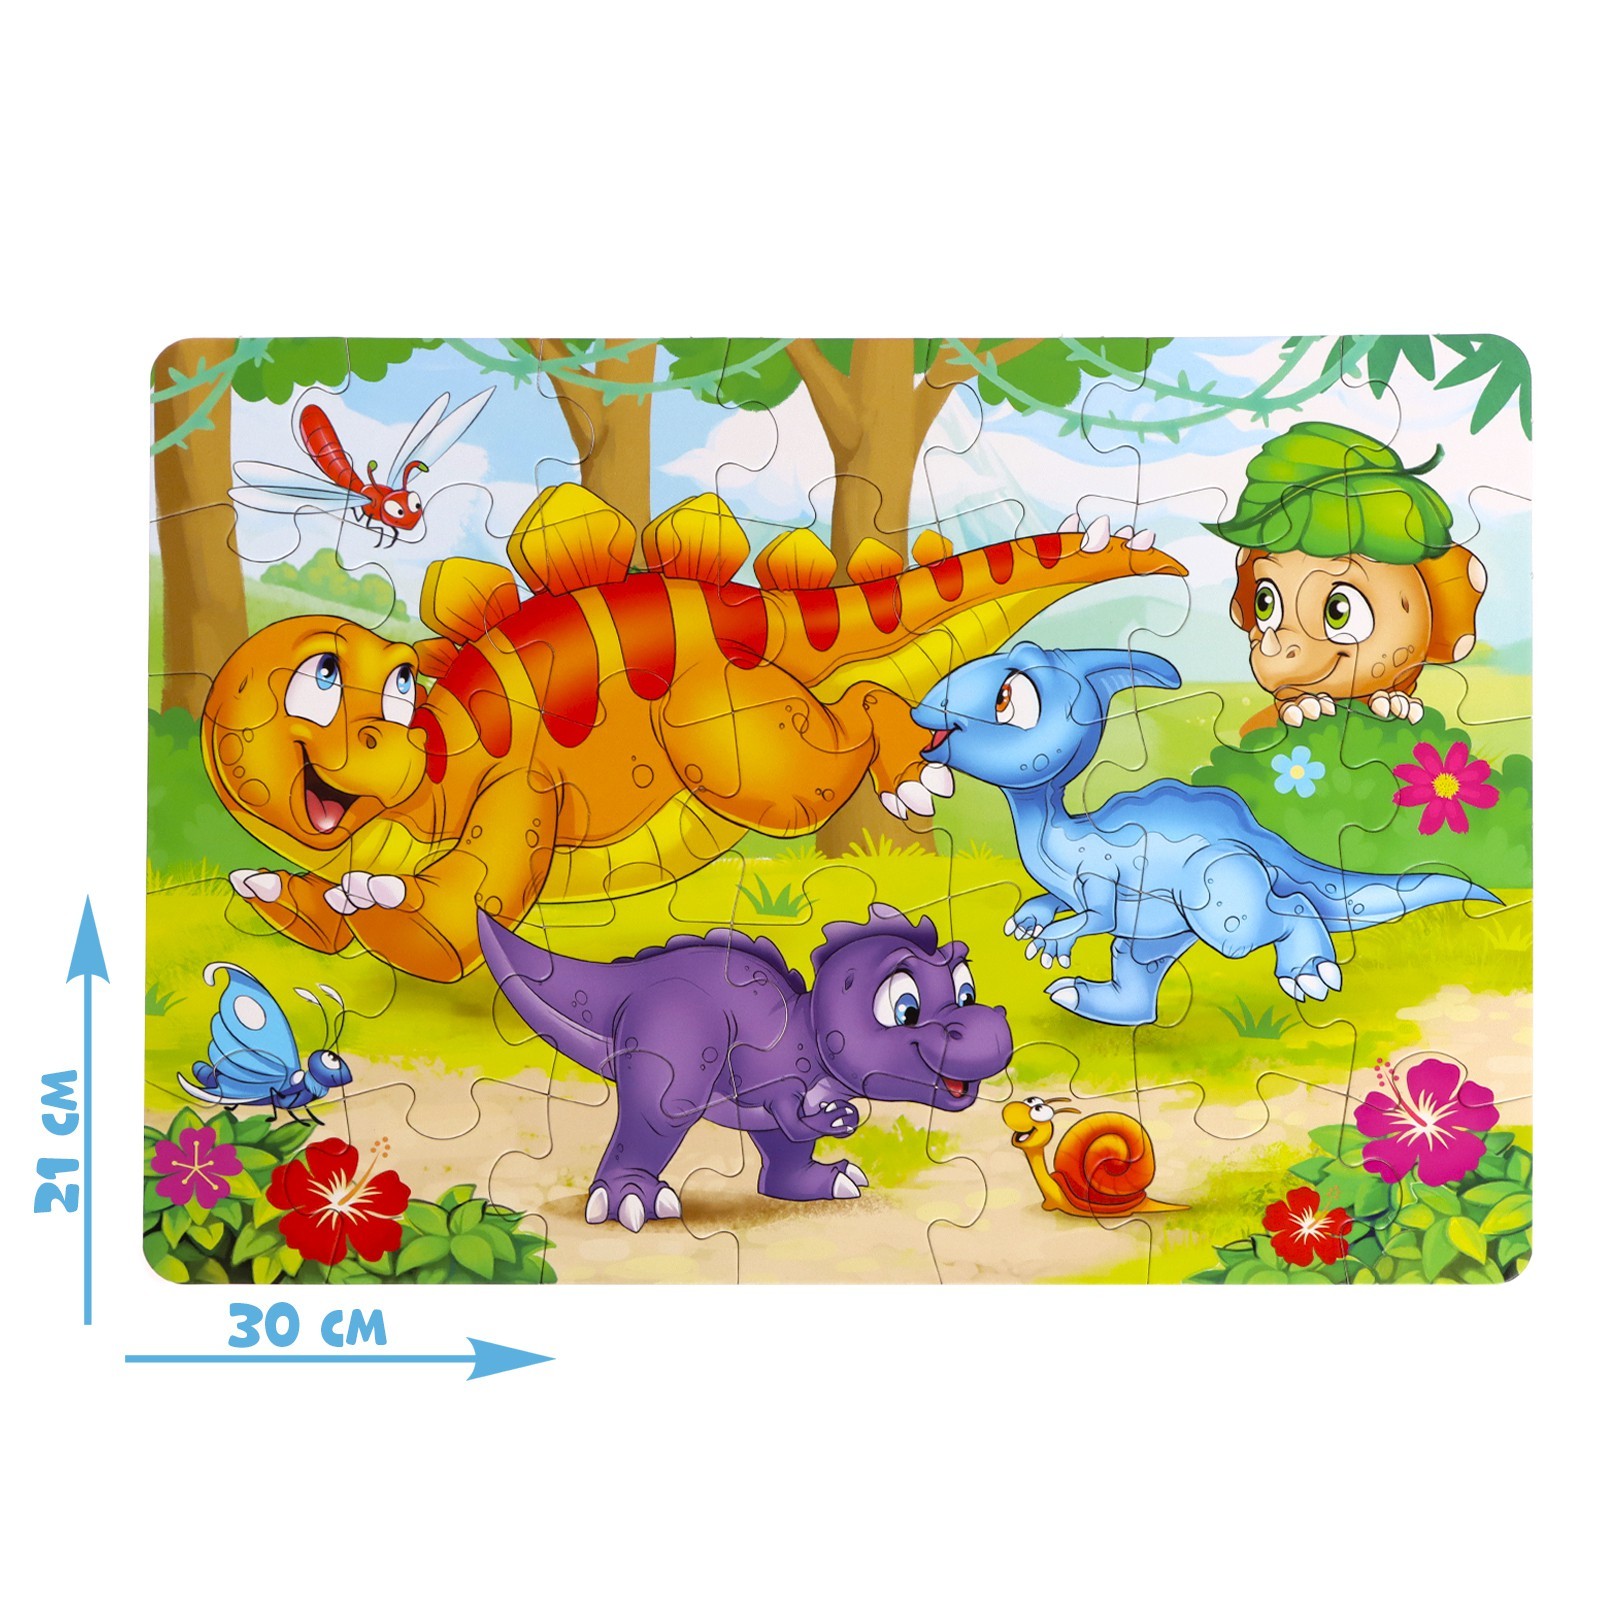 Динозавры играют дети. Игра Динозаврики. Пазлы 35 деталей. Развивающие игры Динозаврики. Игры с динозаврами для детей картинки.